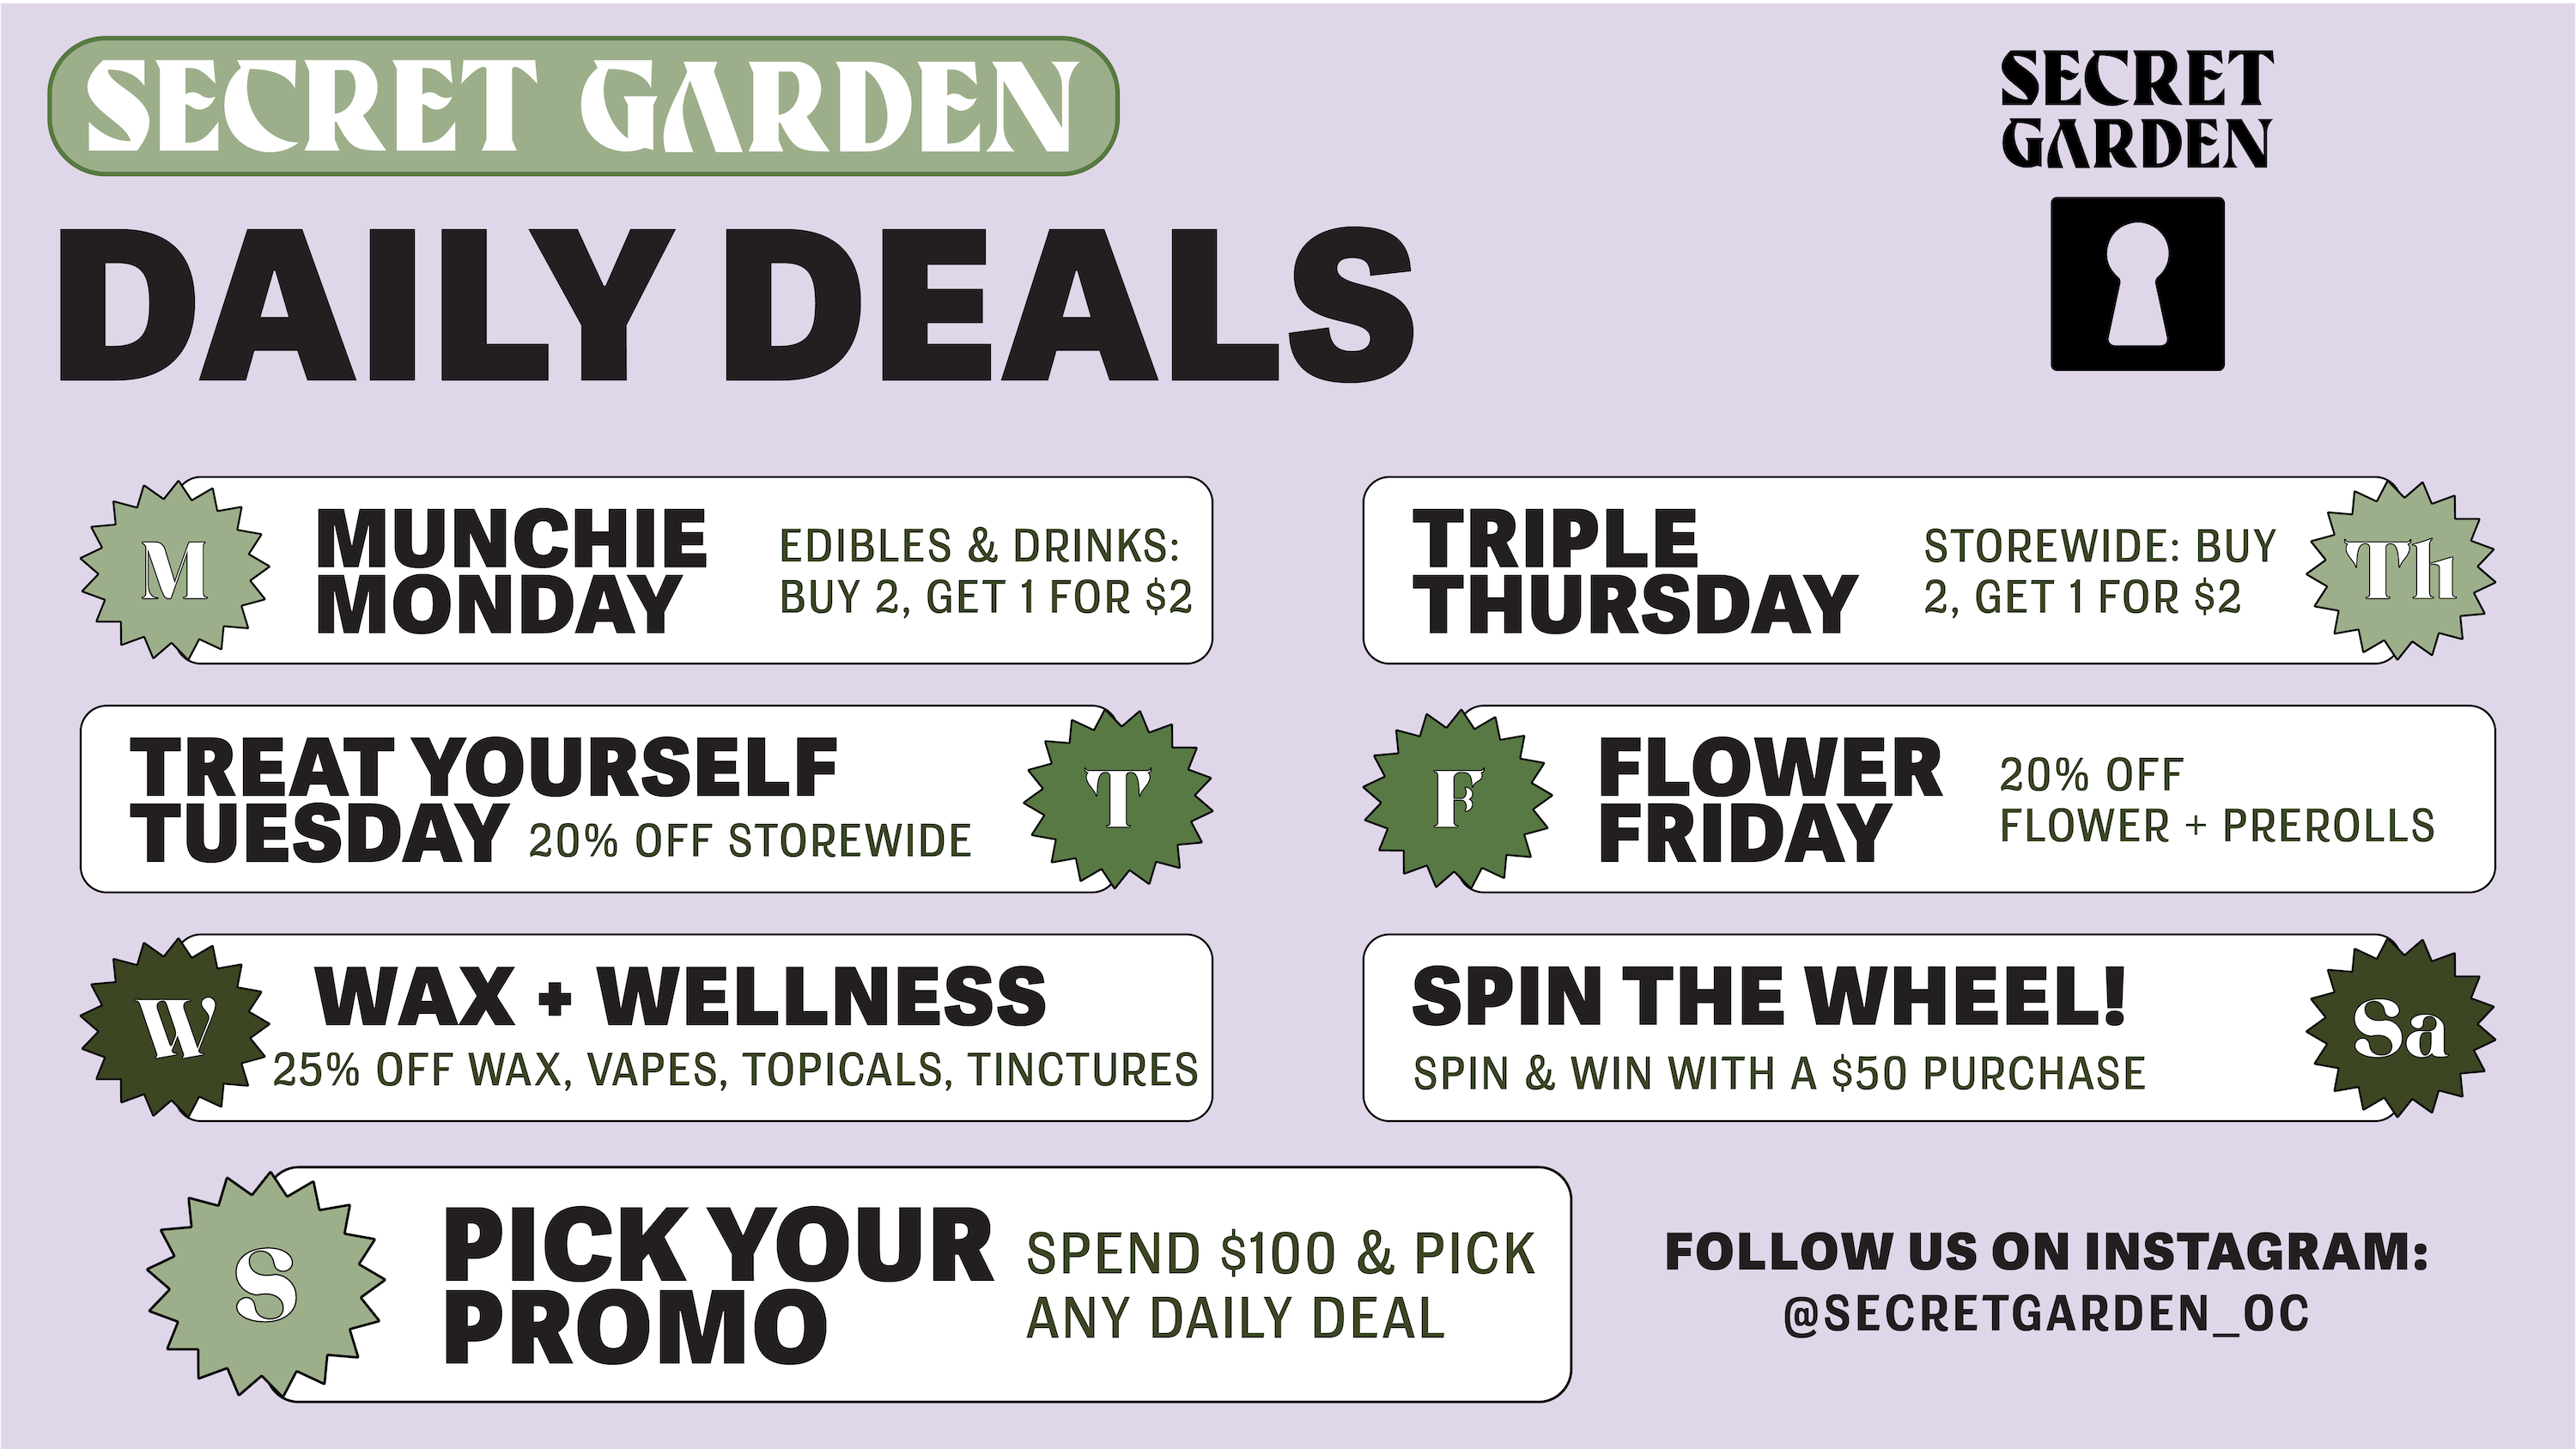 A flyer describing the Cannabis Daily Deals at Secret Garden Costa Mesa